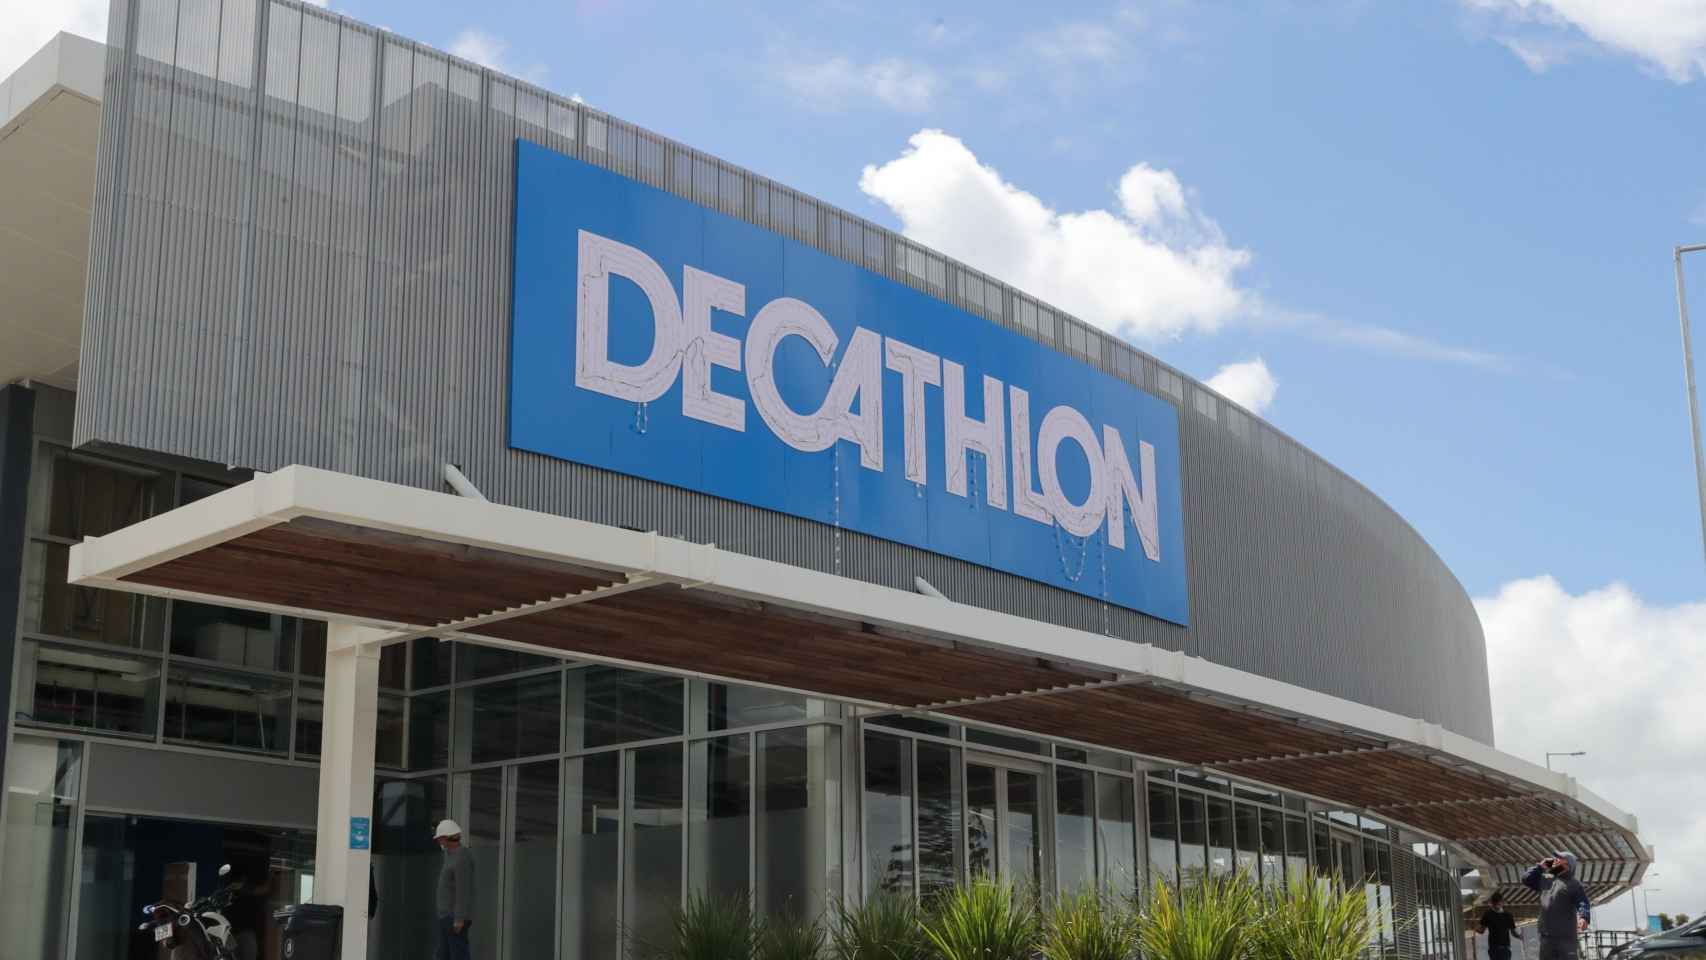 Exterior de una tienda deportiva Decathlon en una imagen de archivo / RAÚL MARTÍNEZ - EFE